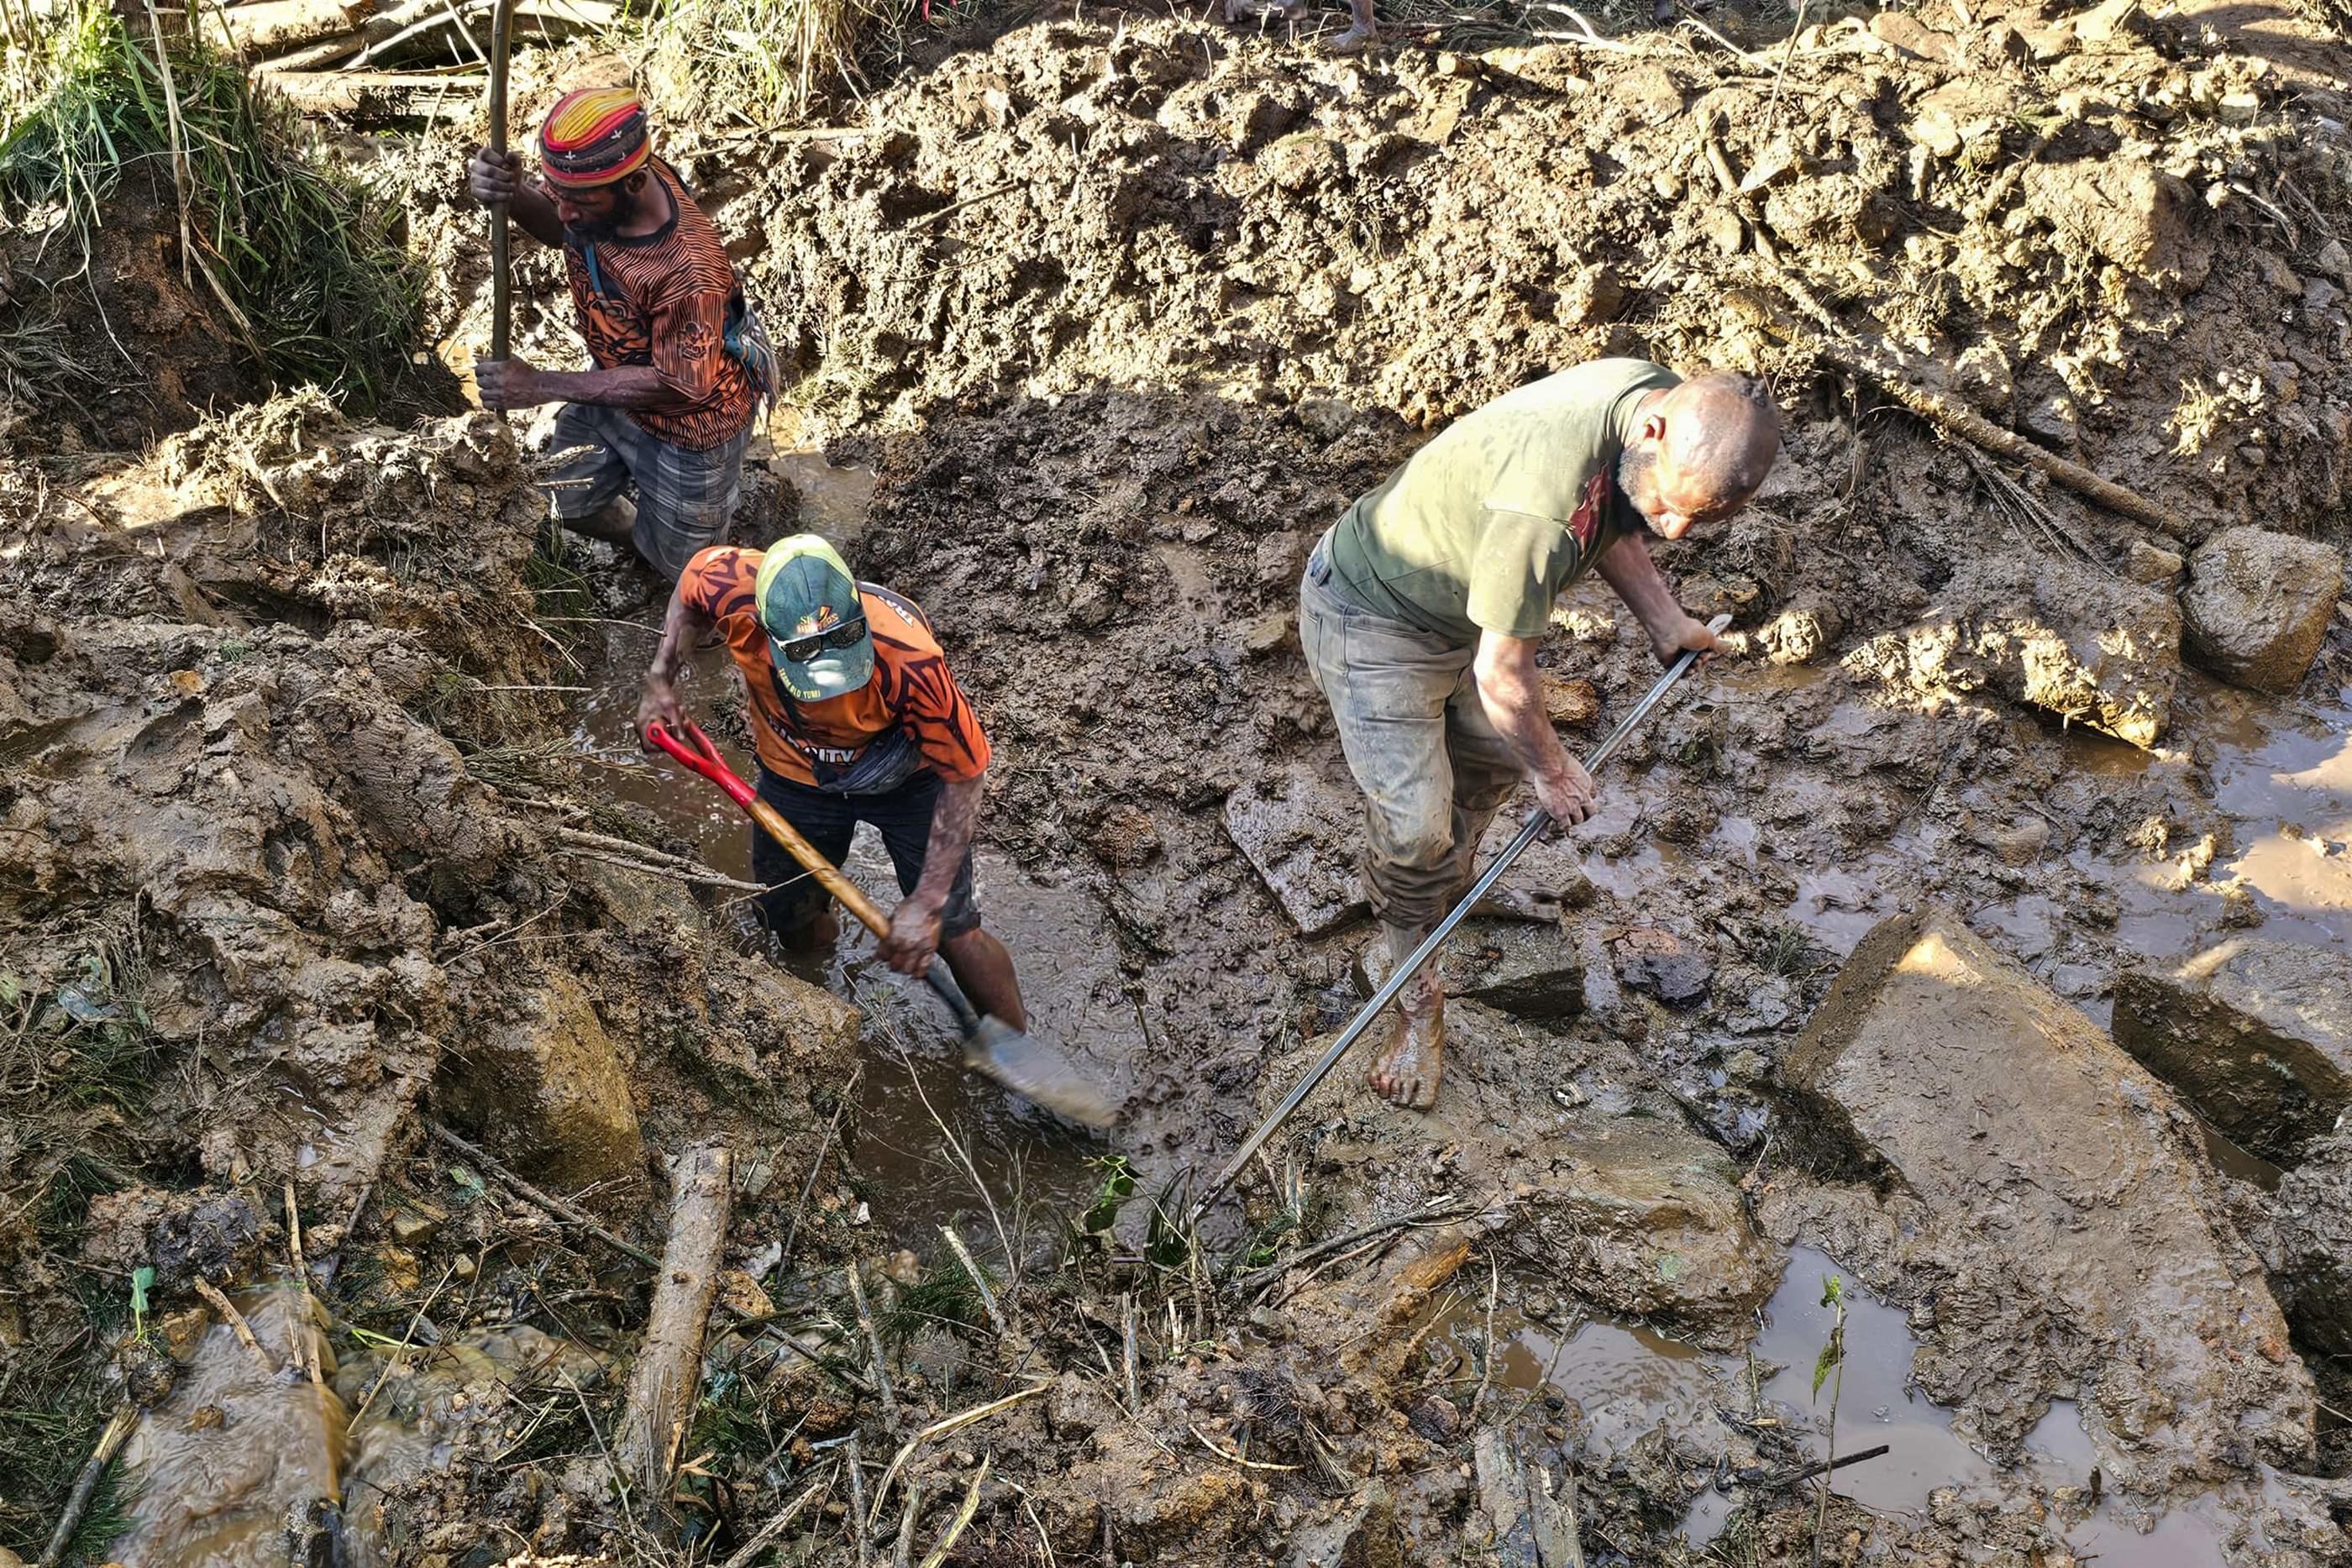 Province d'Enga en Papouasie-Nouvelle-Guinée, le 27 mai. Selon les autorités, le glissement de terrain continue lentement, ce qui constitue un danger permanent pour les équipes de secours et les survivants. AFP/Emmanuel Eralia